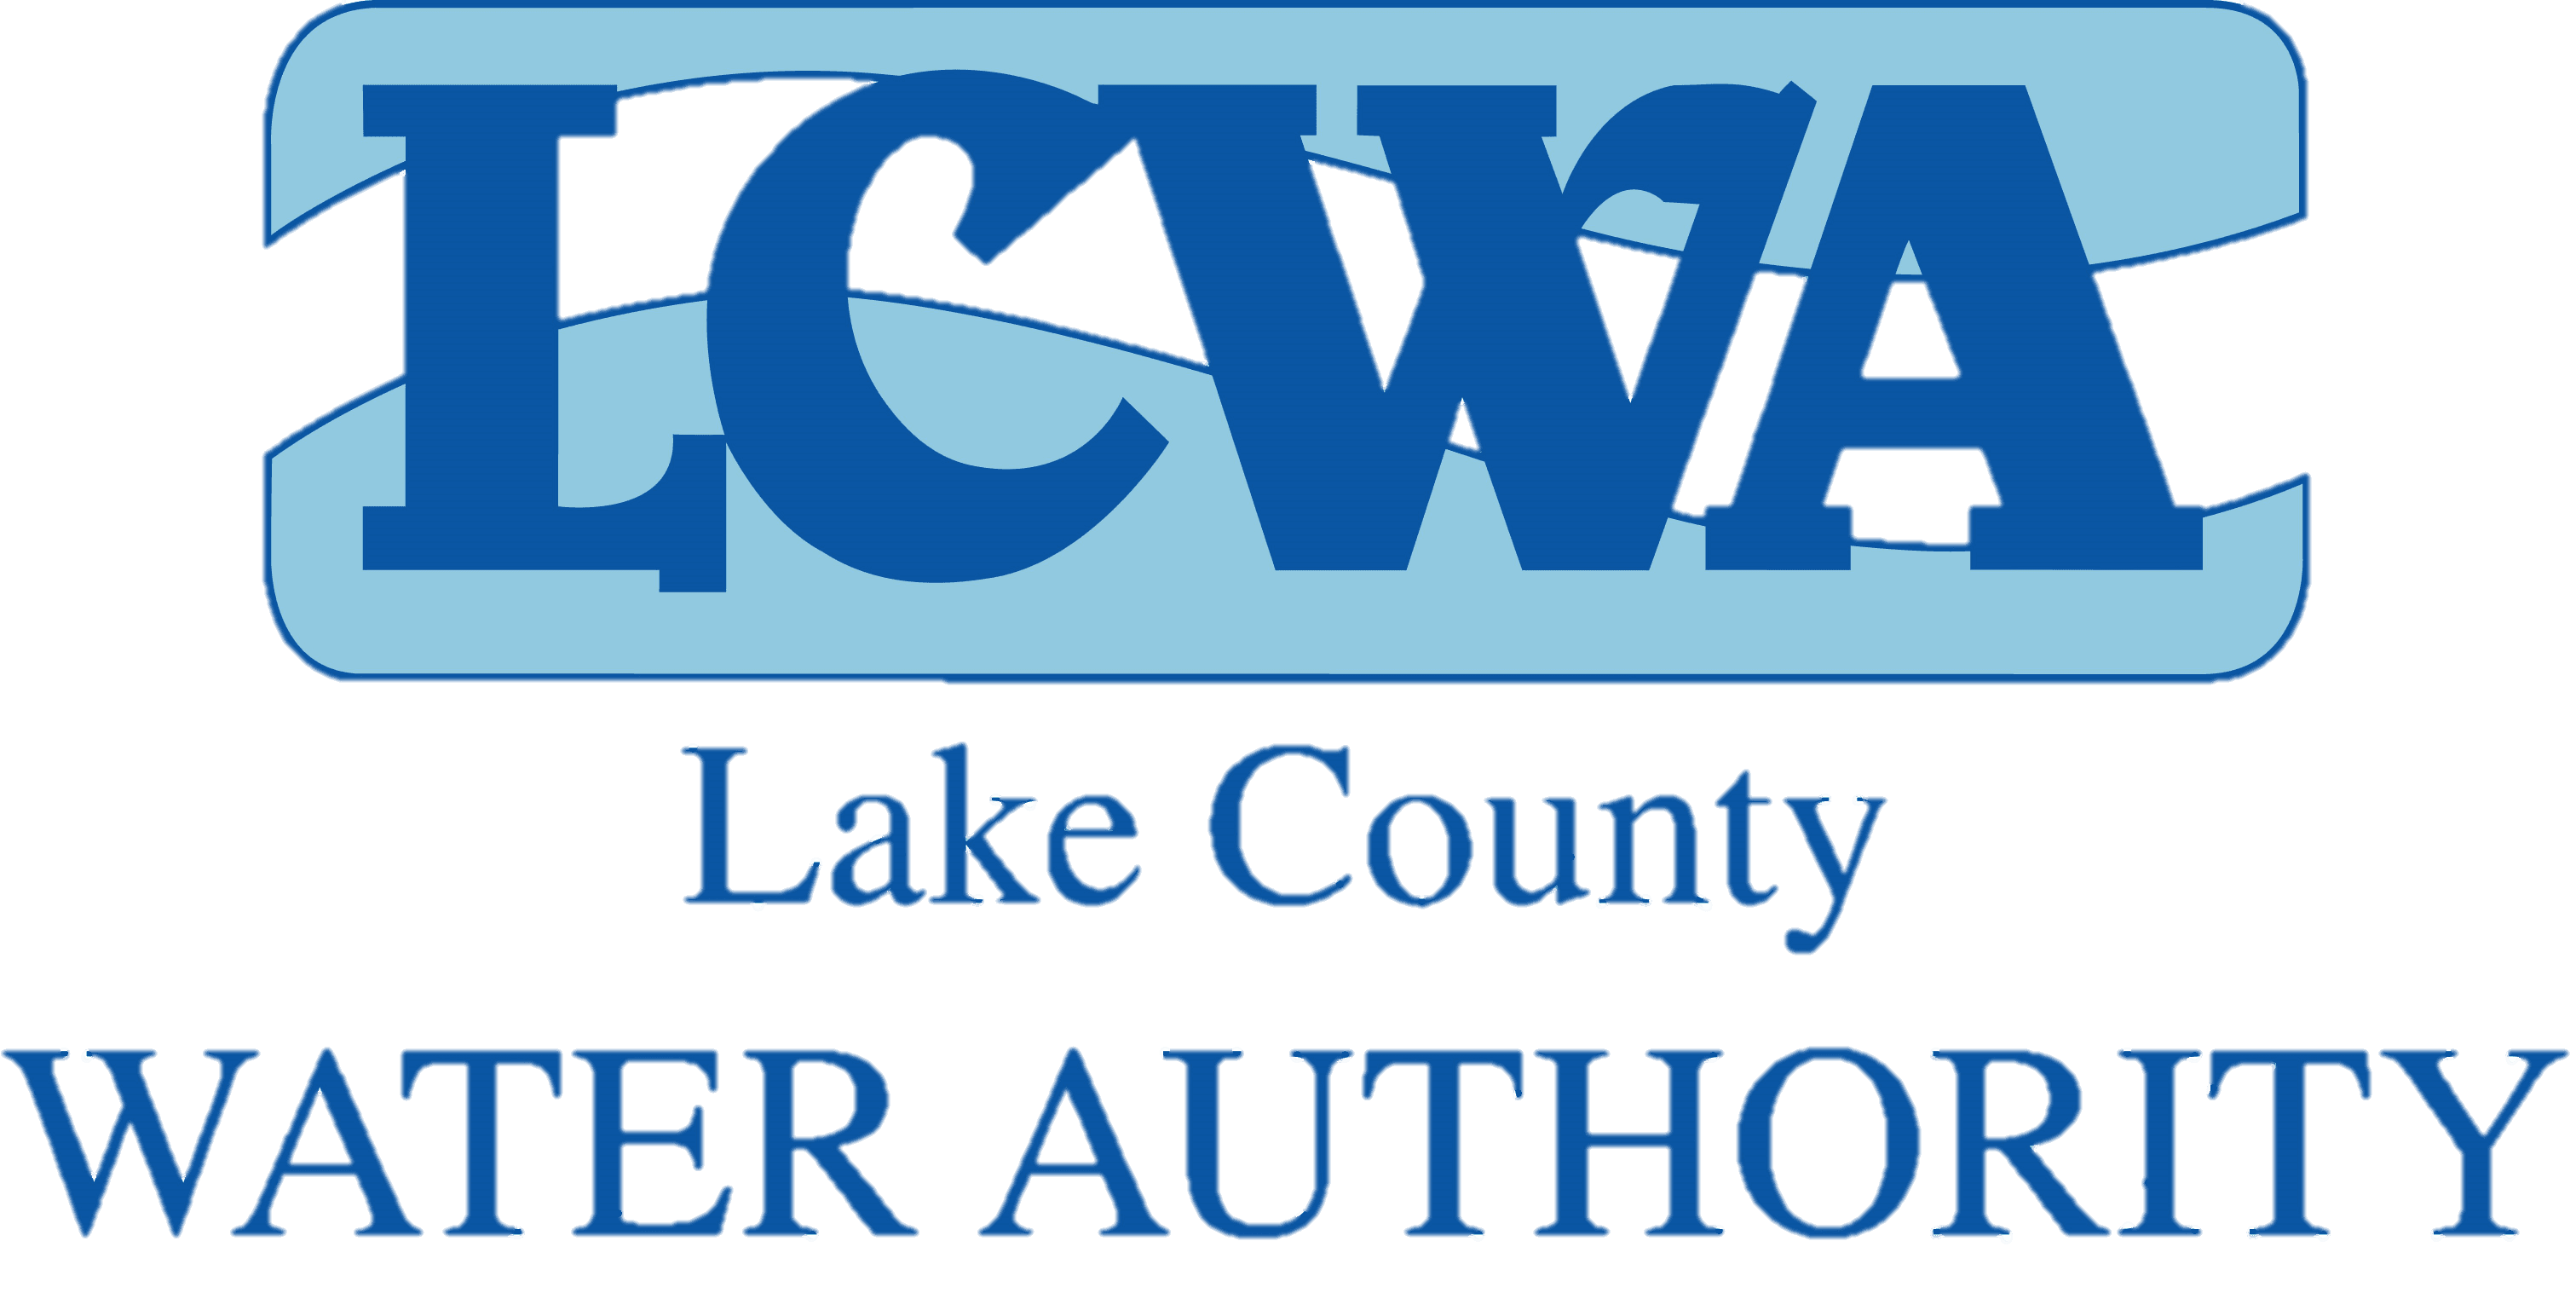 LCWA logo